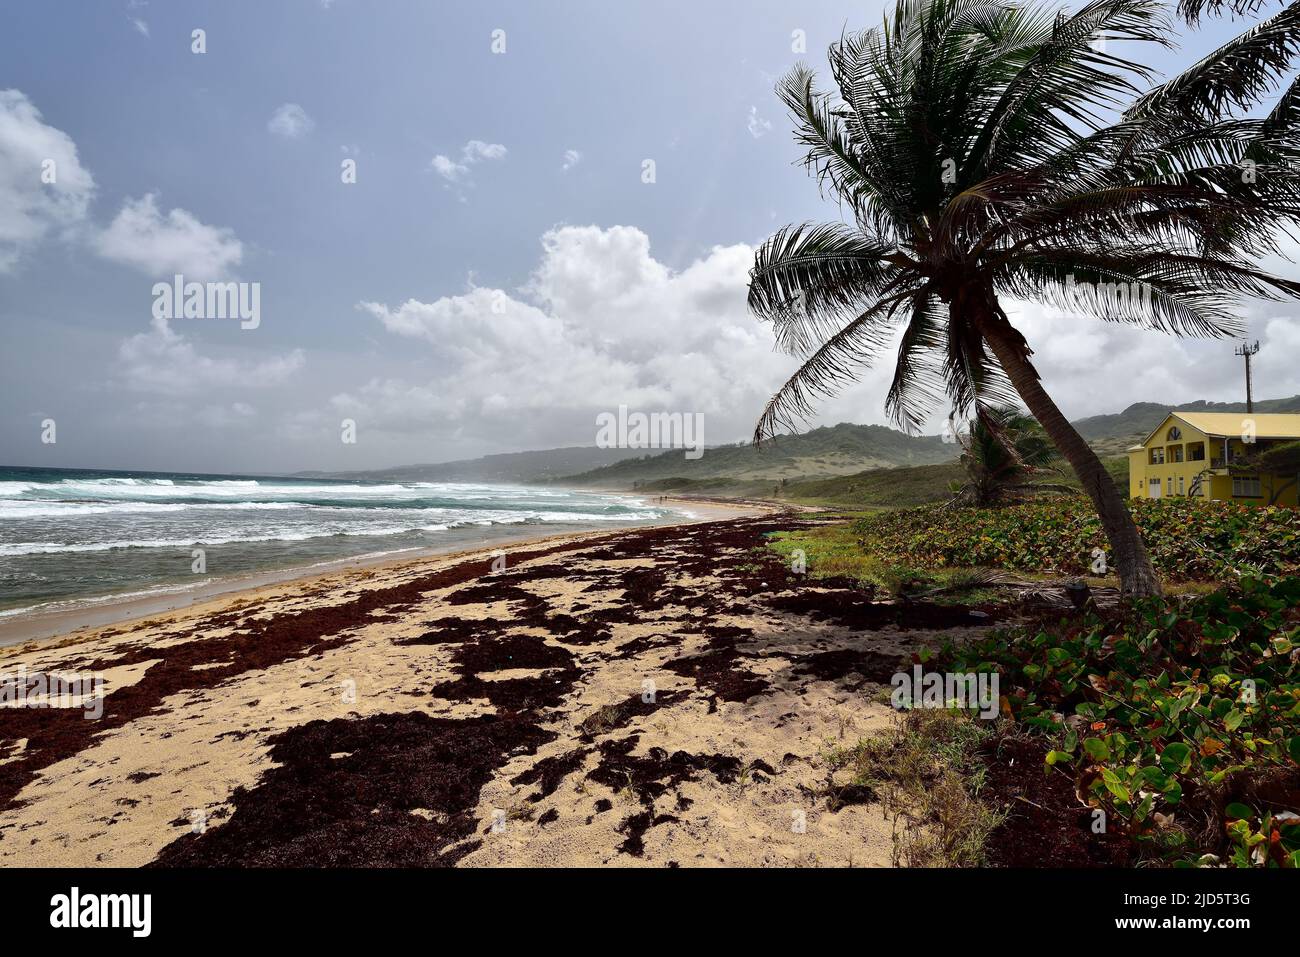 La playa Walkers, cubierta de algas marinas, en el lado este-norte de la isla de Barbados Foto de stock